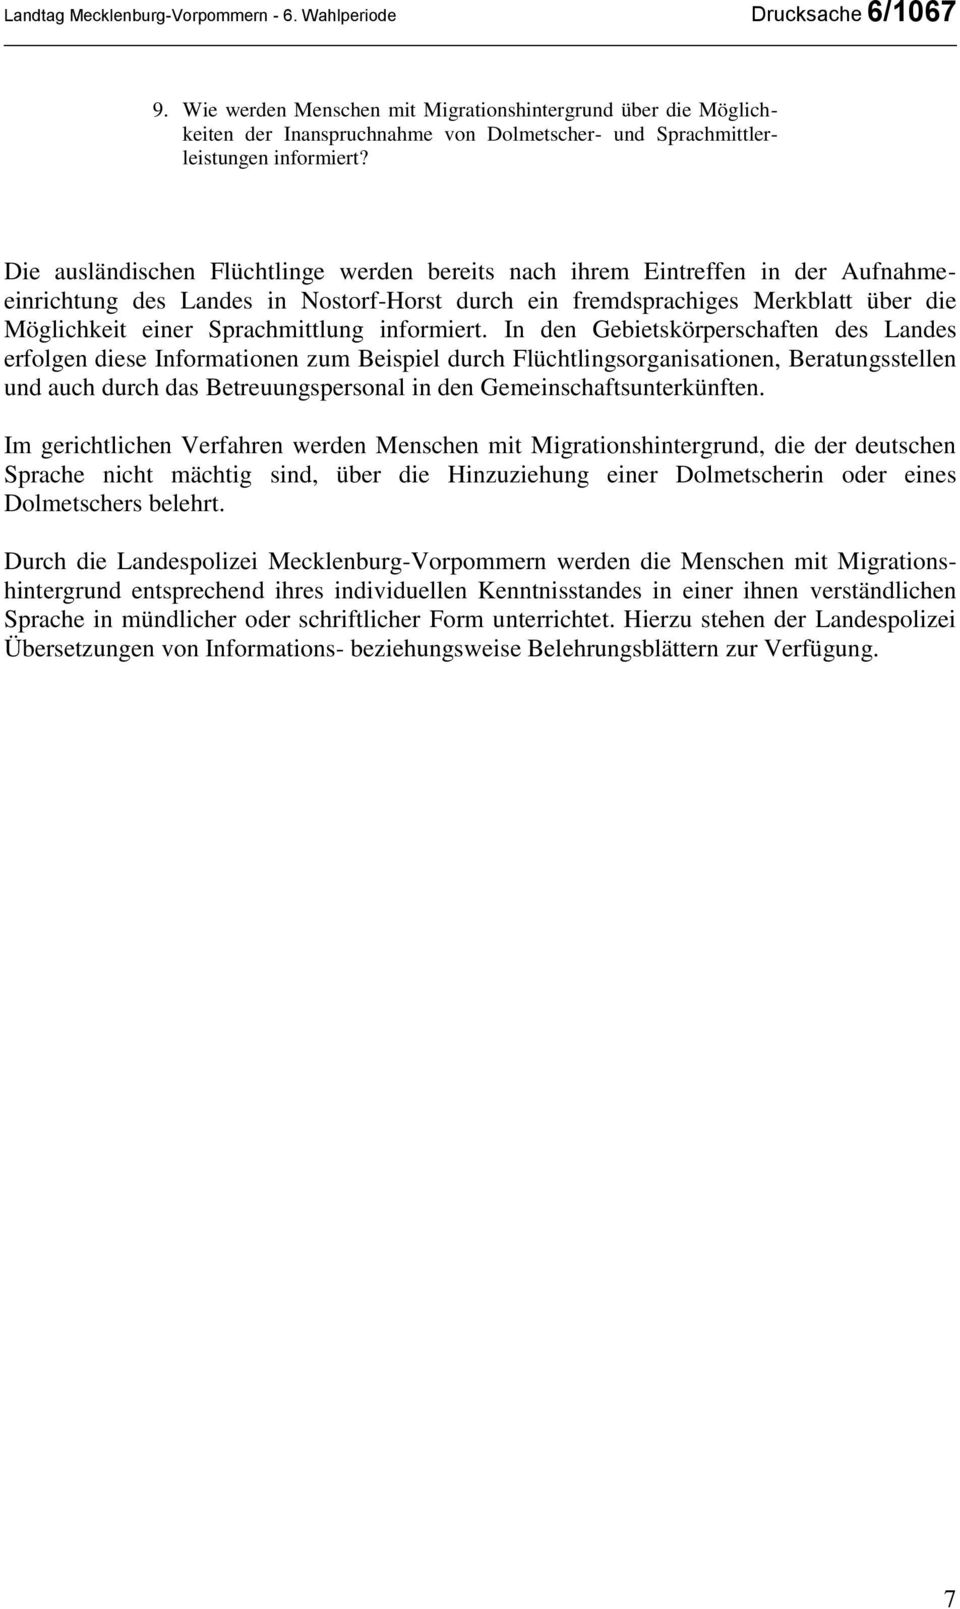 Die ausländischen Flüchtlinge werden bereits nach ihrem Eintreffen in der Aufnahmeeinrichtung des Landes in Nostorf-Horst durch ein fremdsprachiges Merkblatt über die Möglichkeit einer Sprachmittlung